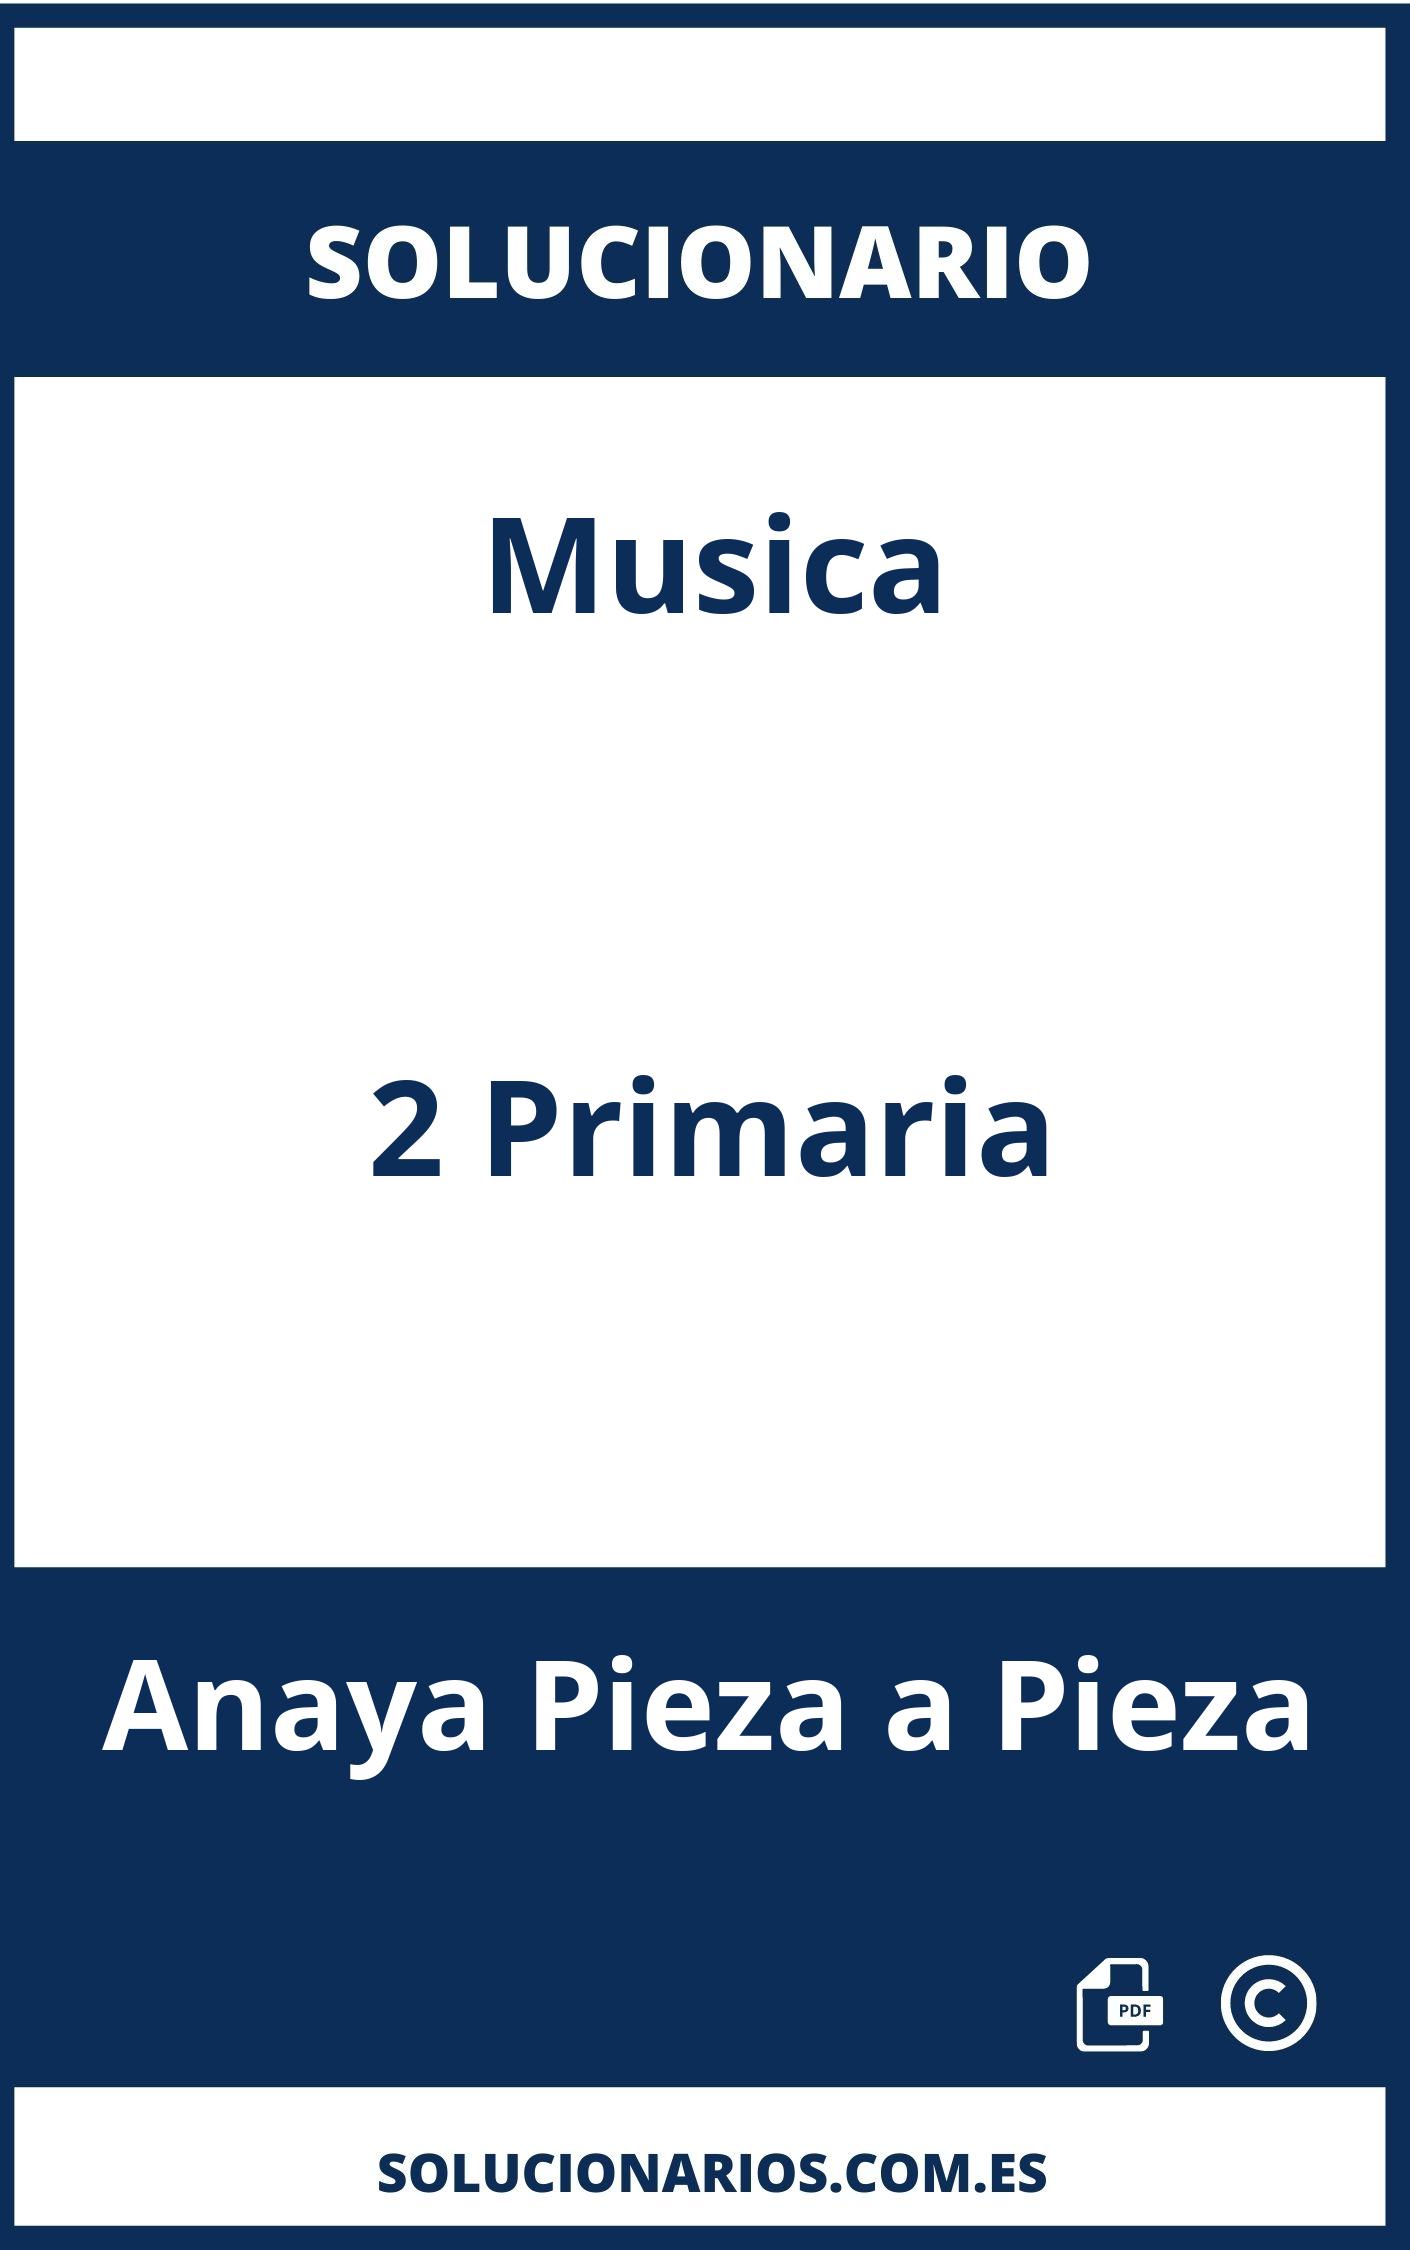 Solucionario Musica 2 Primaria Anaya Pieza a Pieza